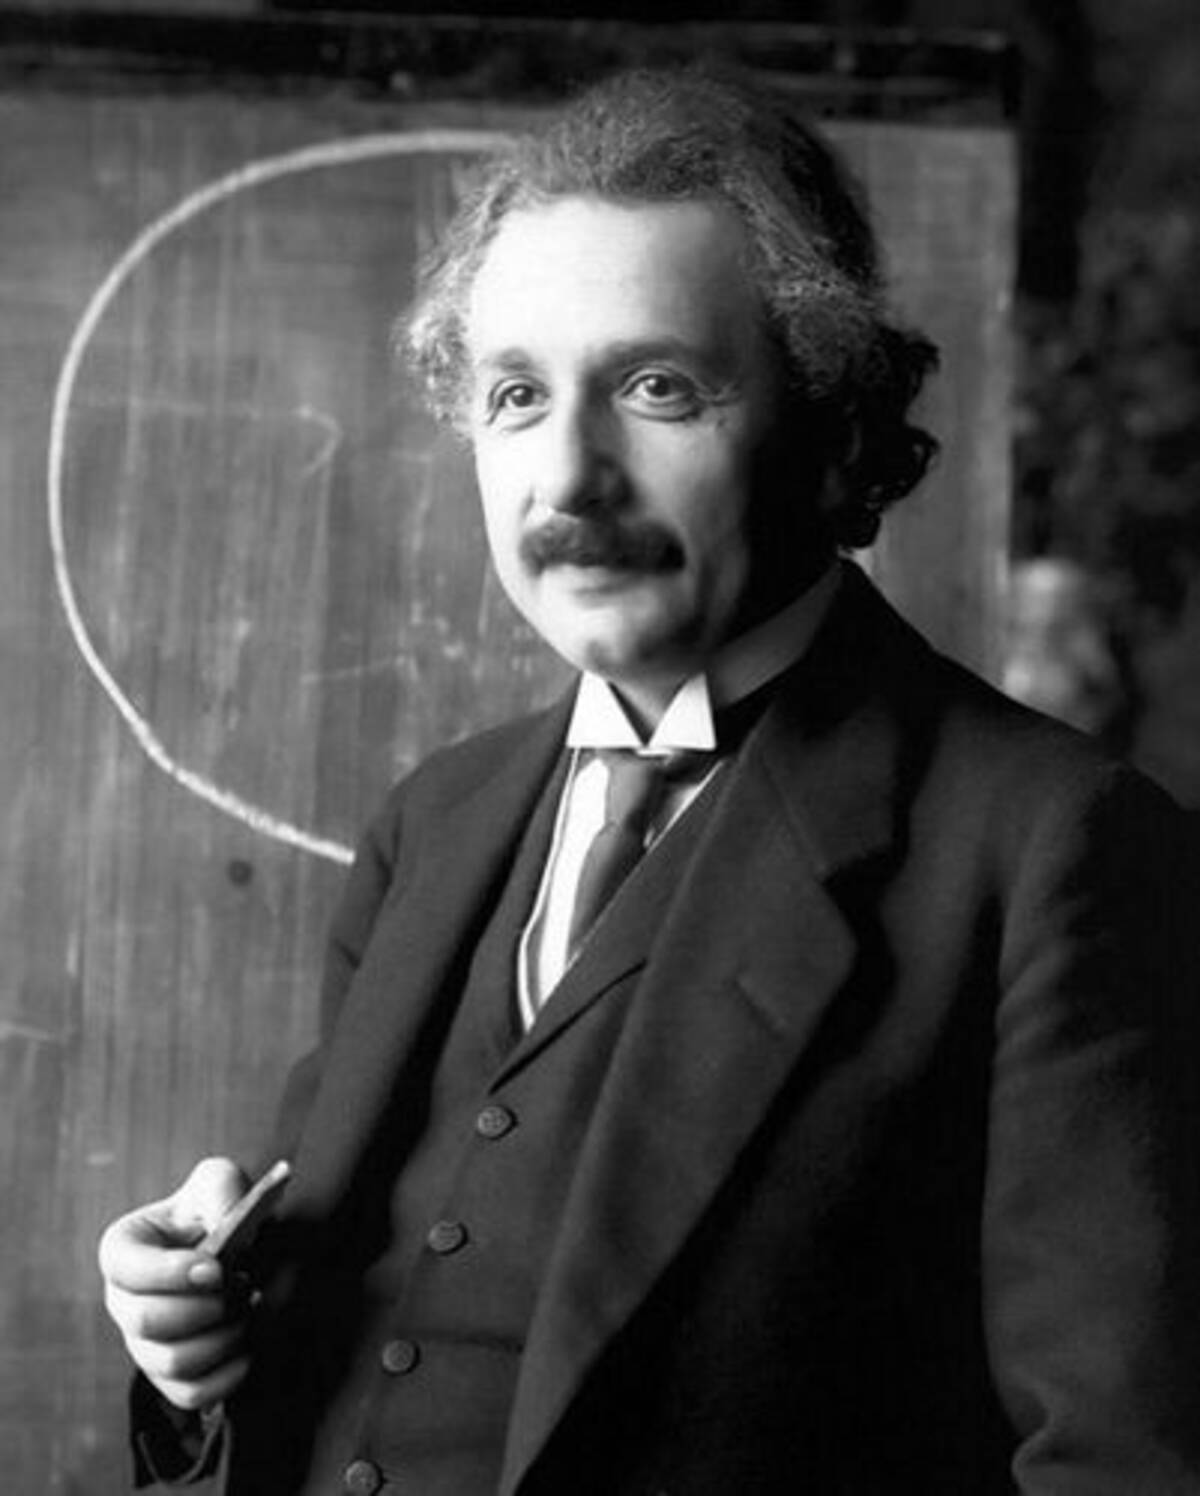 あなたは彼の言葉に何を見出す 世紀の大天才 アインシュタインの名言10選 12年4月19日 エキサイトニュース